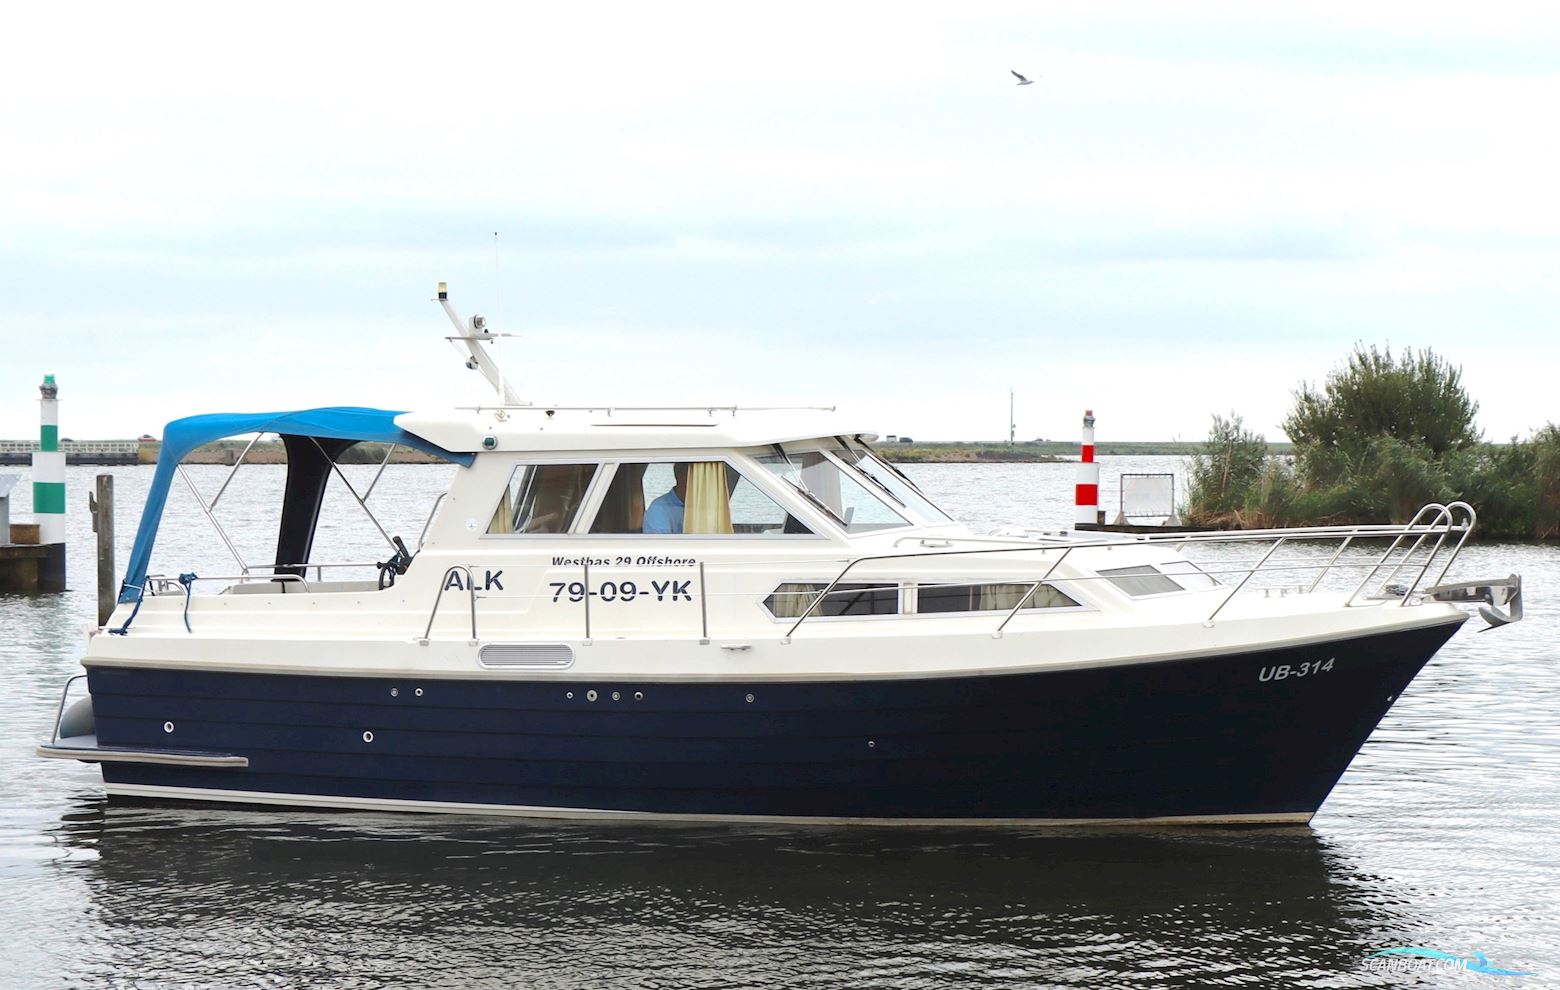 Westbas 29 Offshore Motorbåt 2004, med Volvo Penta motor, Holland